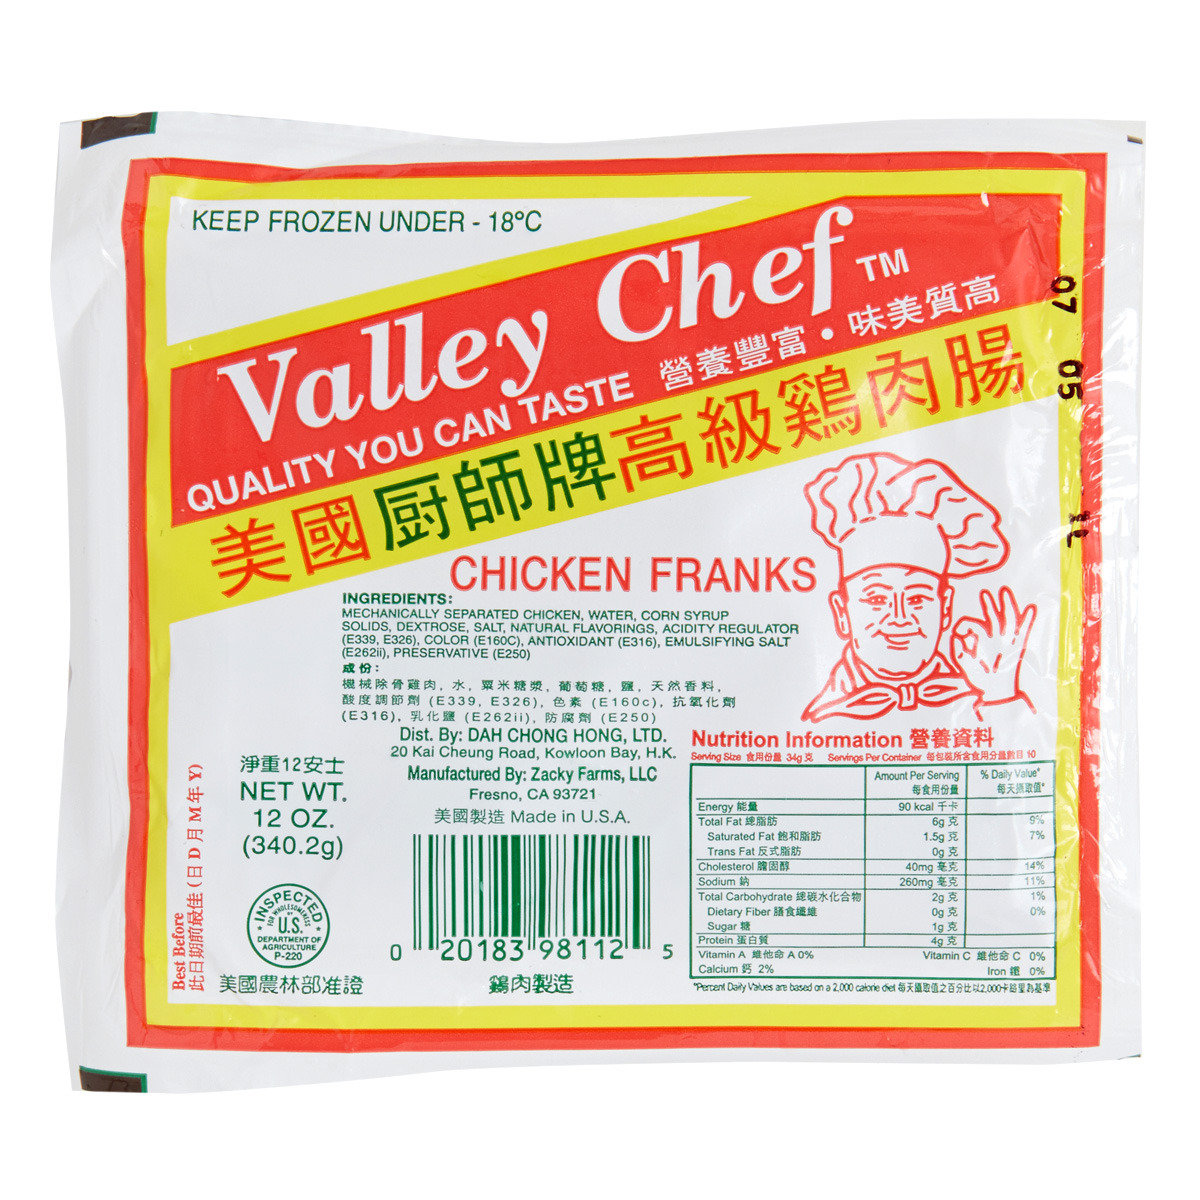 高級雞肉腸 (急凍-18°C)#打邊爐